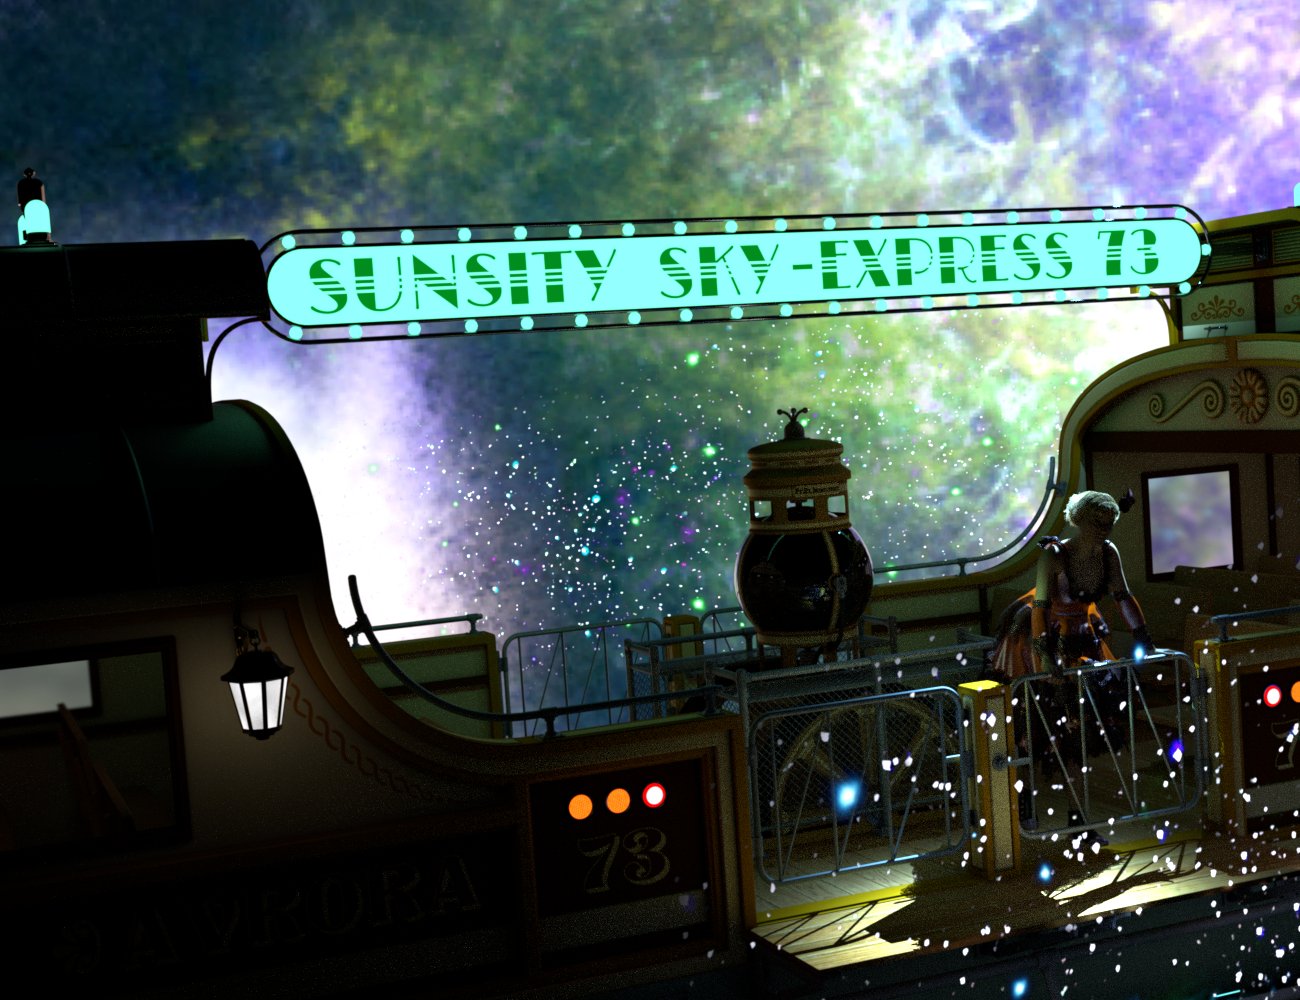 SF Nifty Nebulas by: SickleyieldFuseling, 3D Models by Daz 3D